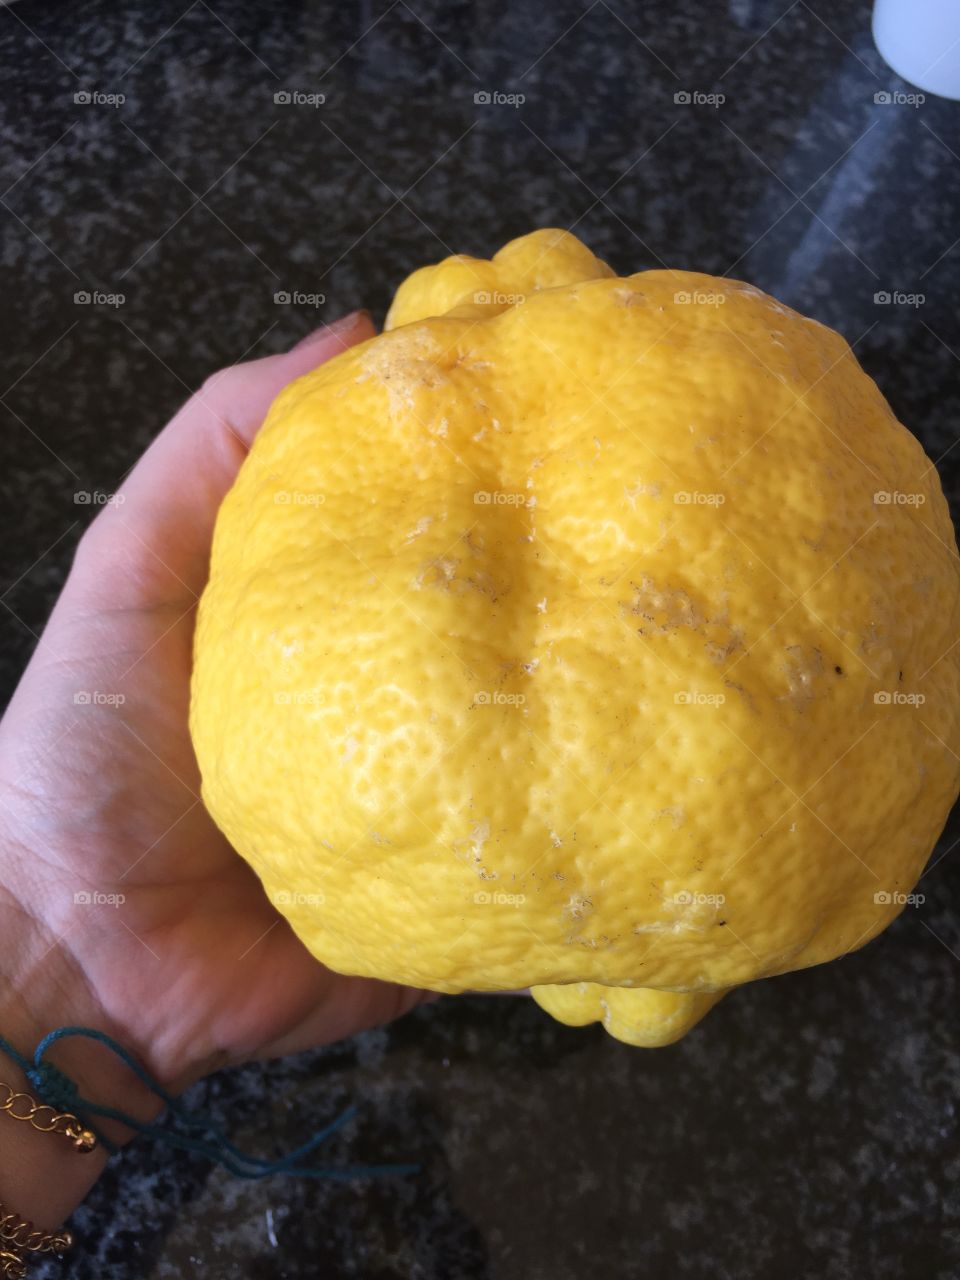 Hige yeloow lemon